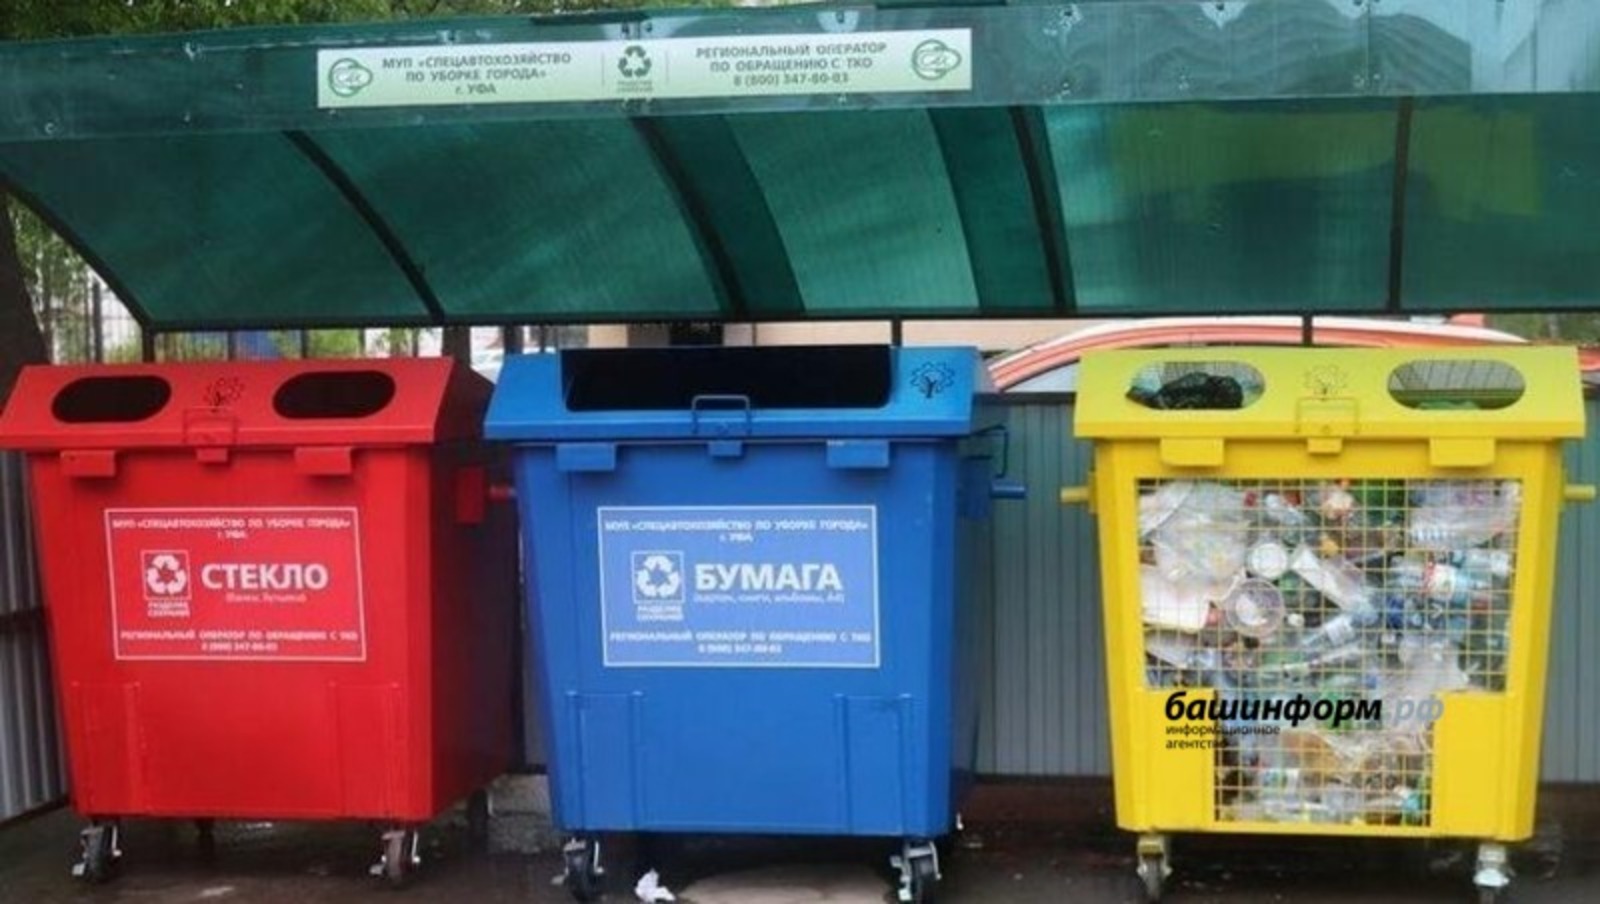 Башкирия получит федеральную субсидию на покупку контейнеров для раздельного сбора мусора